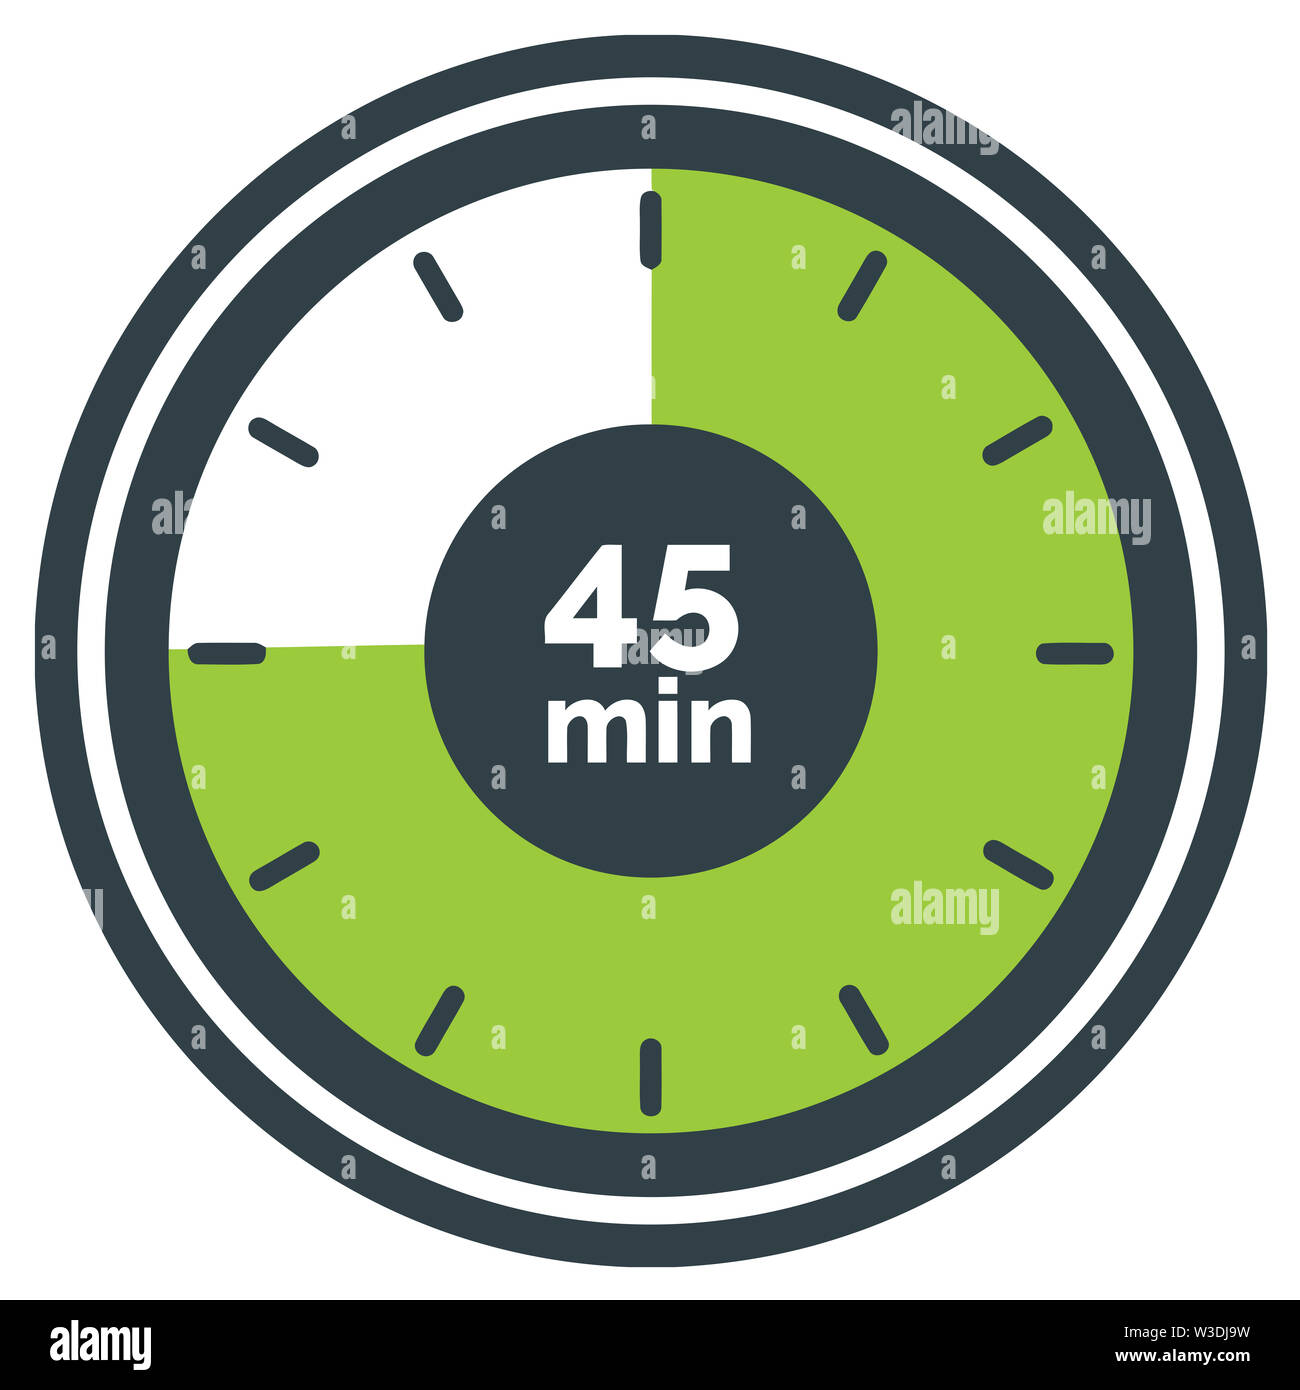 https://c8.alamy.com/comp/W3DJ9W/countdown-timer-round-45-min-circle-sport-illustration-W3DJ9W.jpg